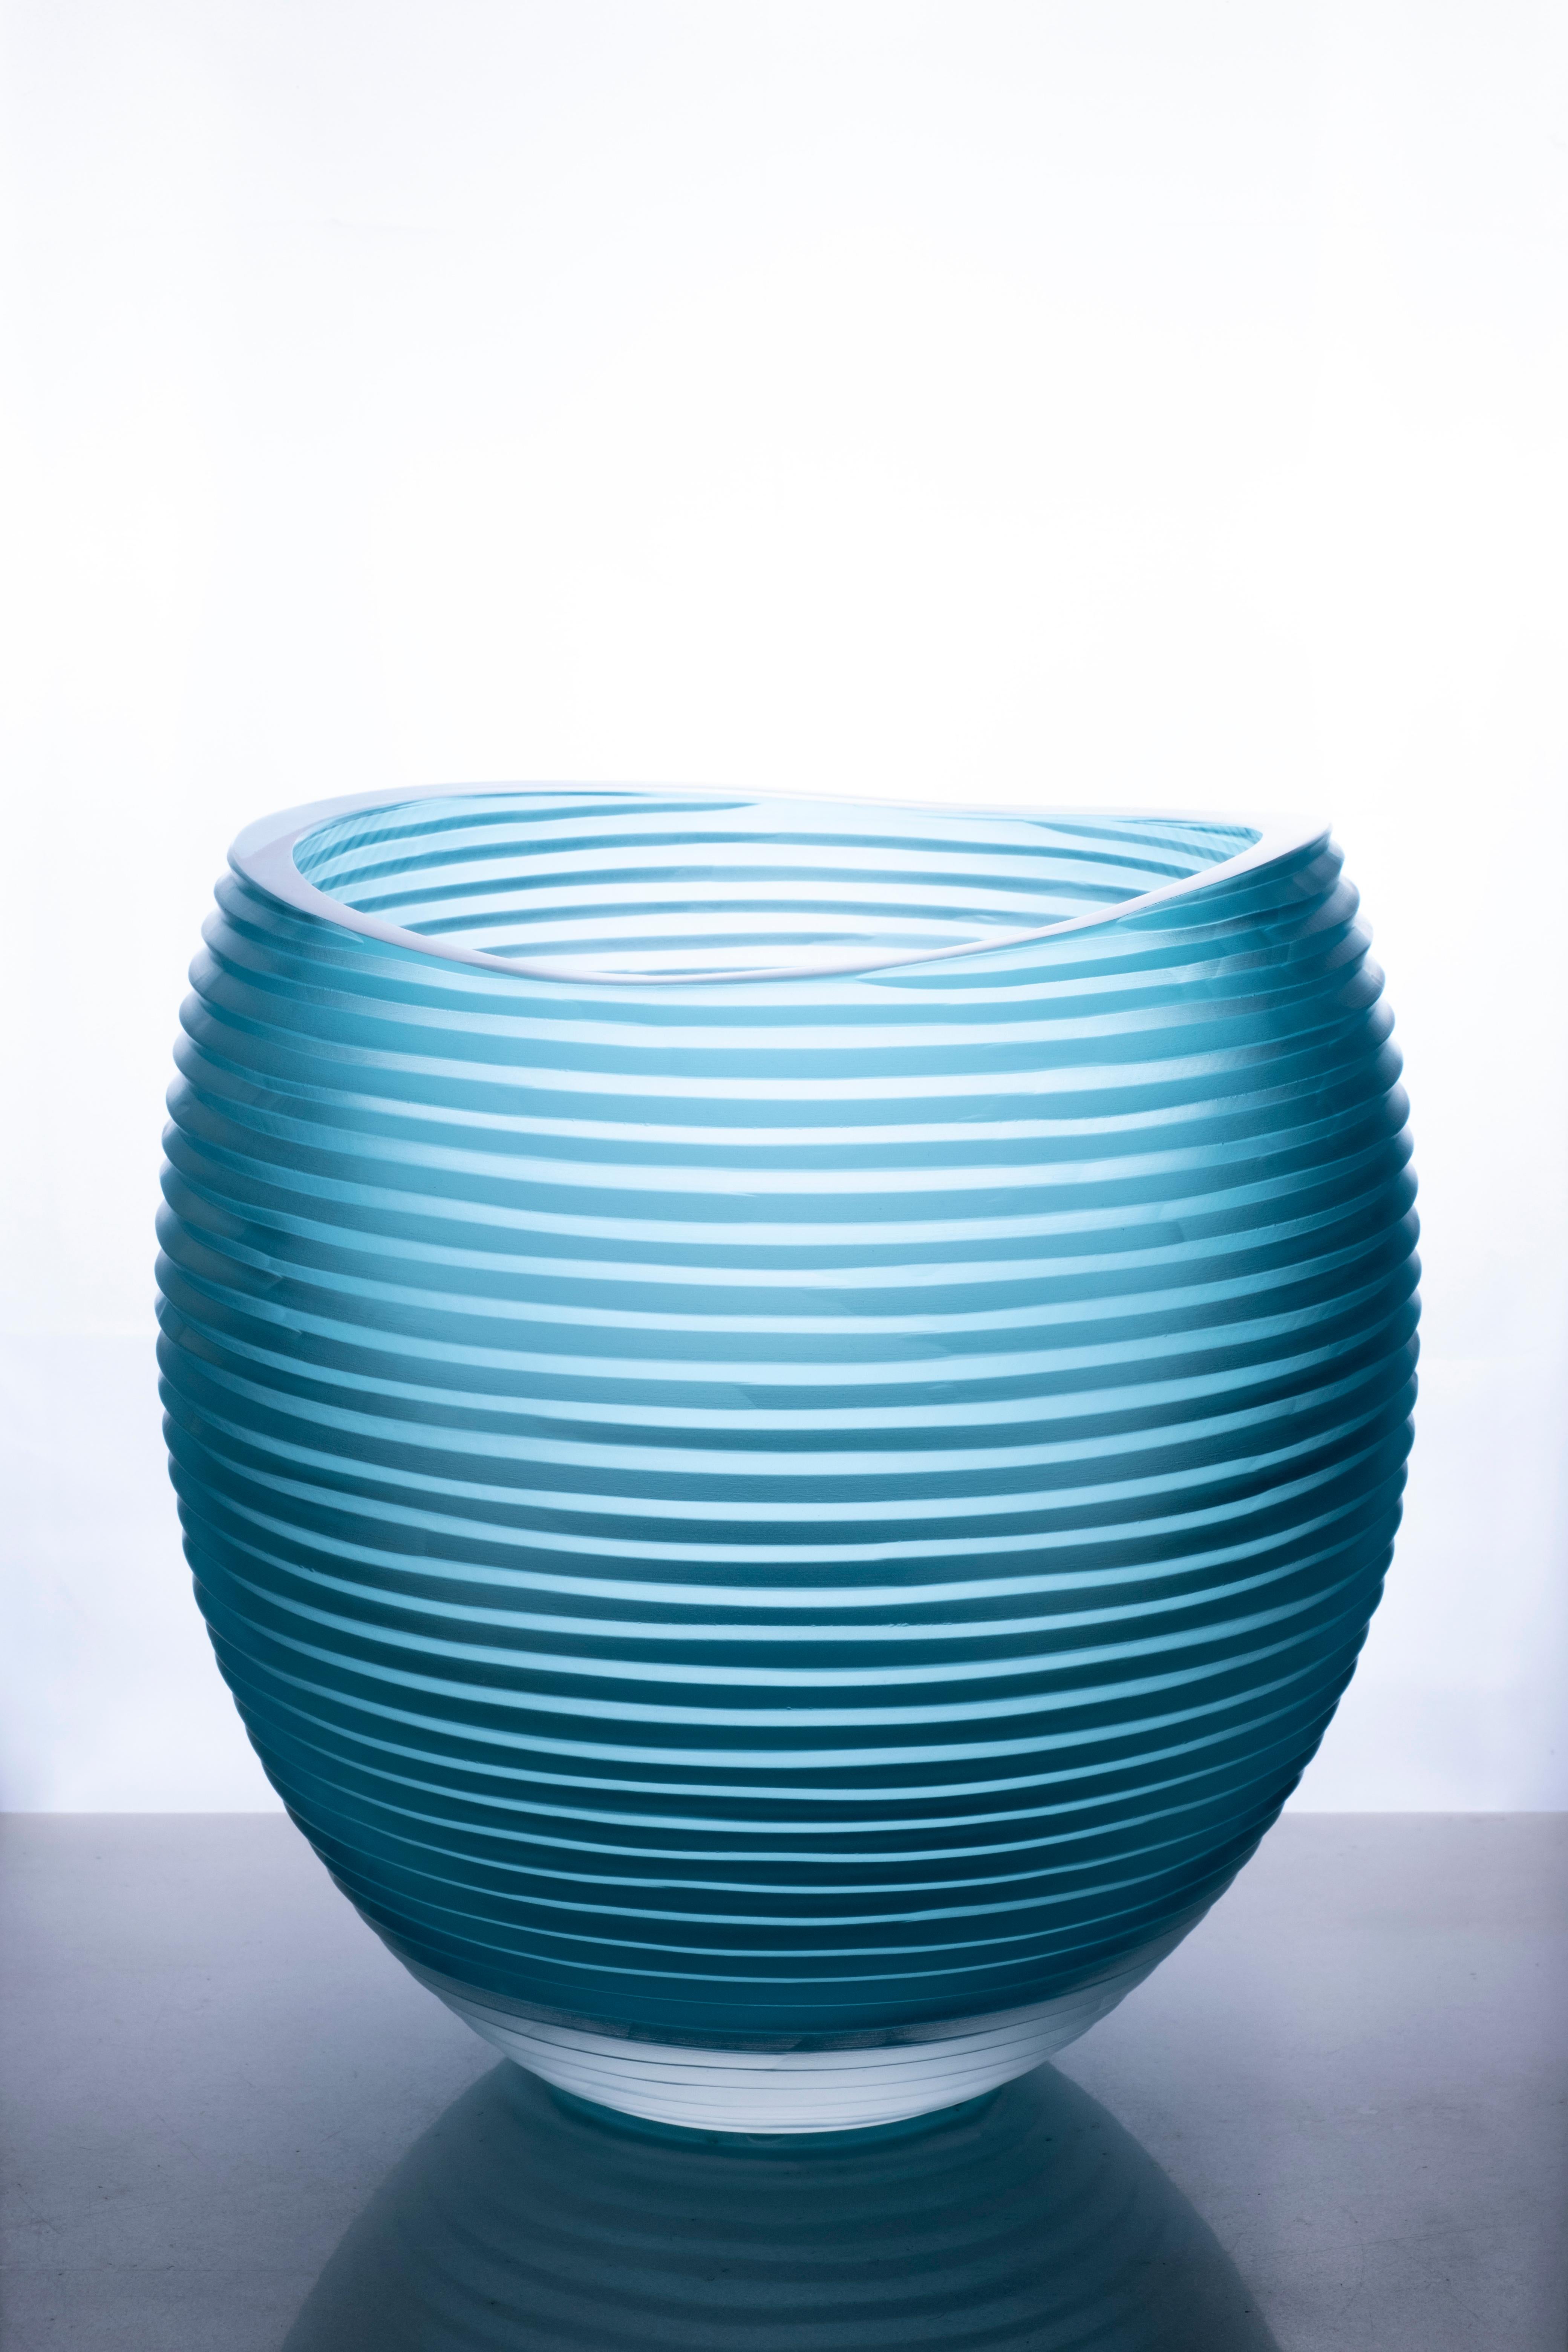 Grand vase Incisioni Linae de Purho
Dimensions : D 22 x H 35 cm.
Matériaux : verre
D'autres couleurs et dimensions sont disponibles.

Purho est un nouveau protagoniste du design made in Italy, un travail de synthèse, une recherche qui dure depuis